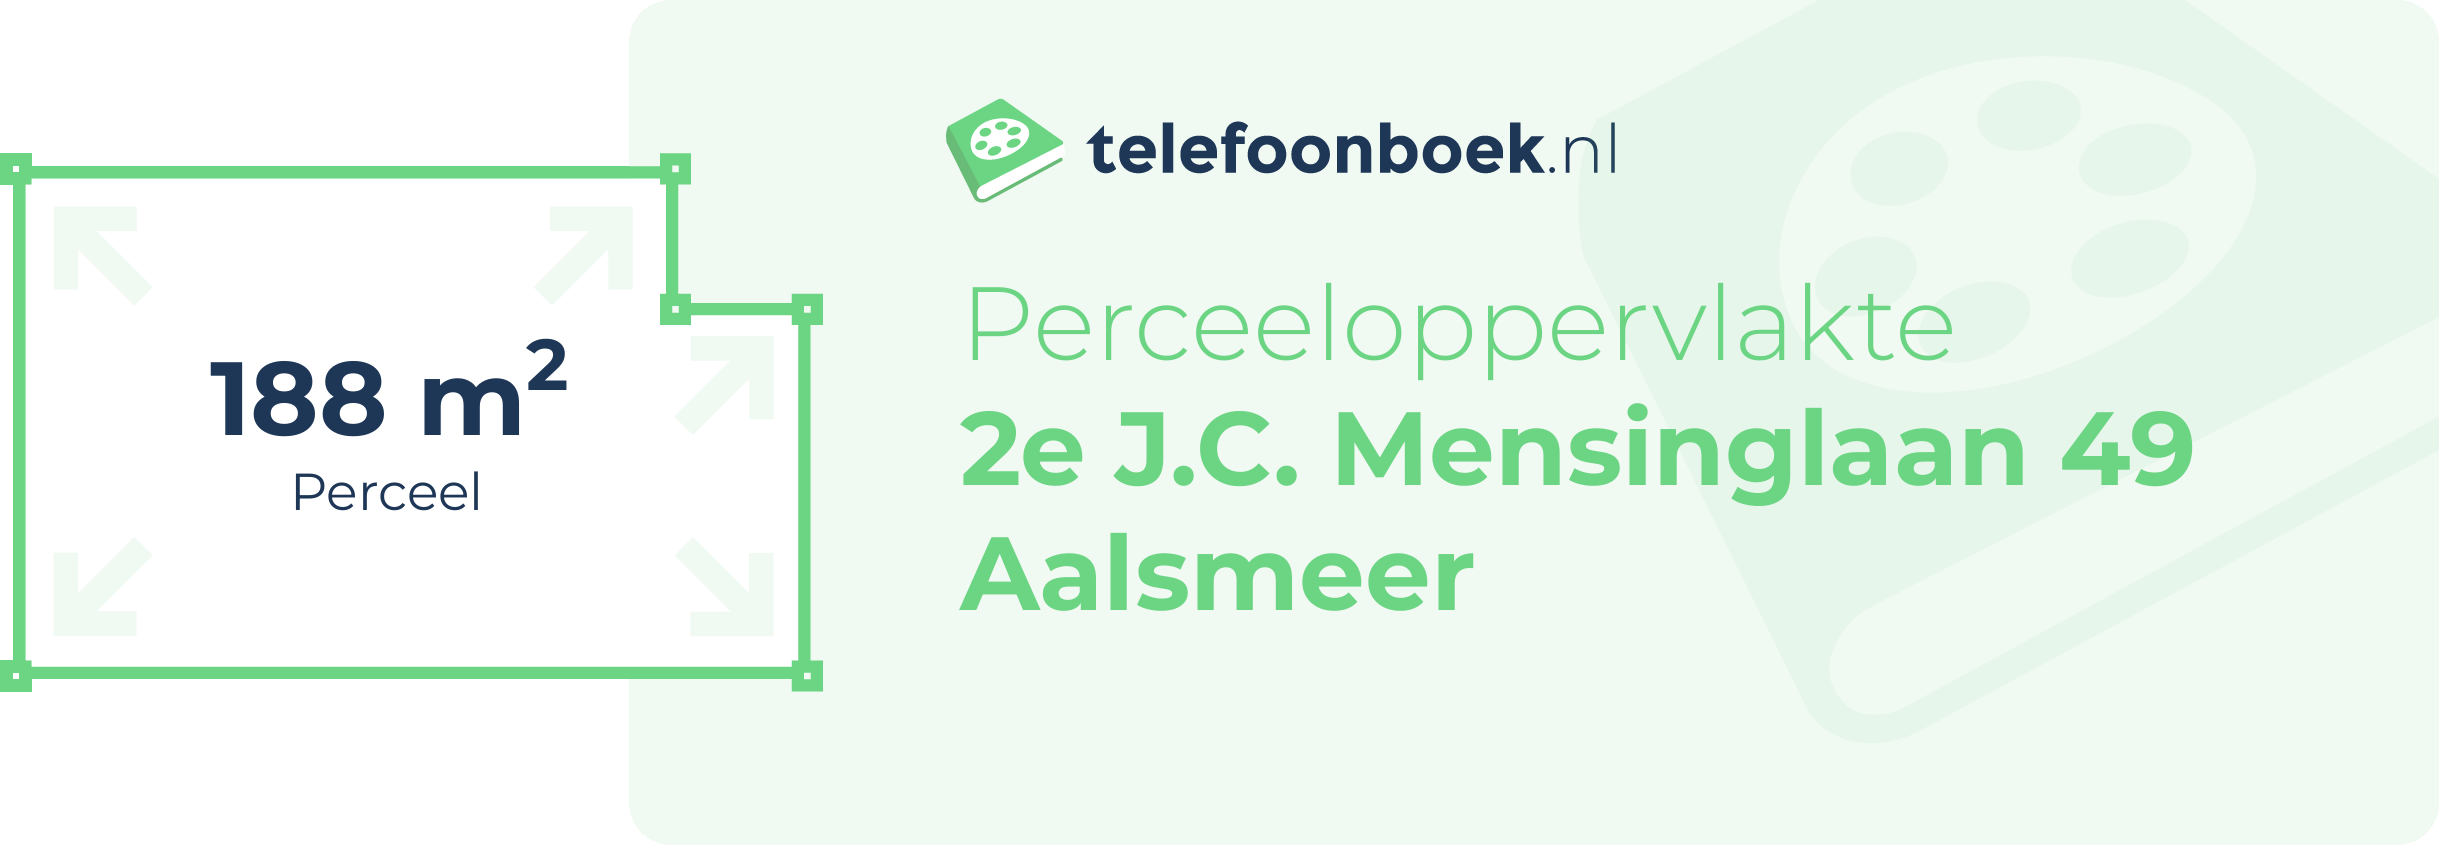 Perceeloppervlakte 2e J.C. Mensinglaan 49 Aalsmeer